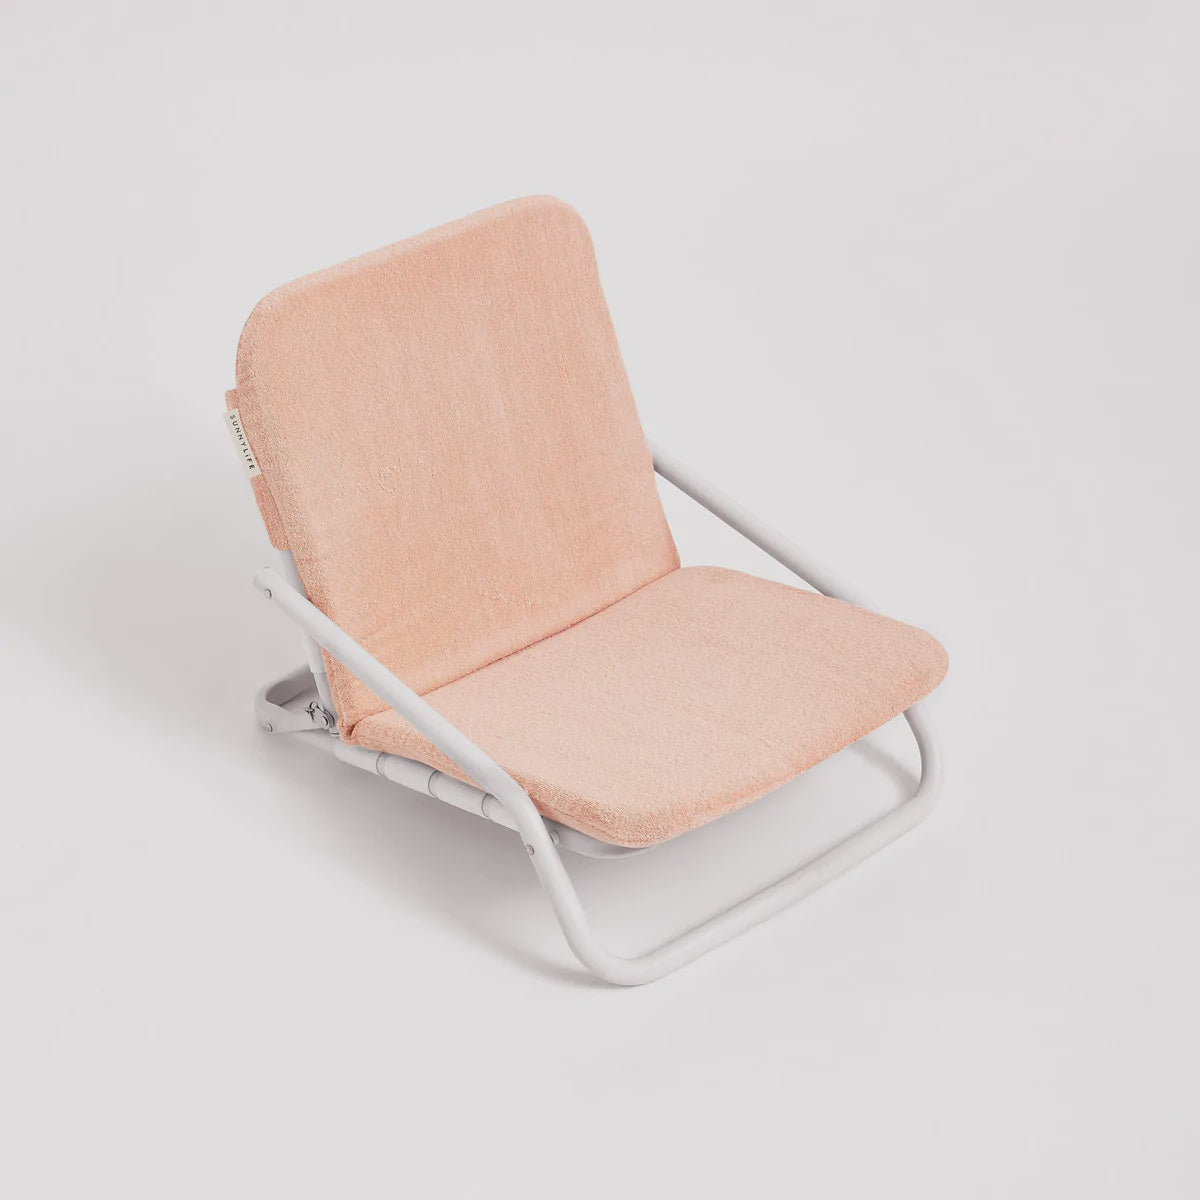 Cushioned Beach Chair